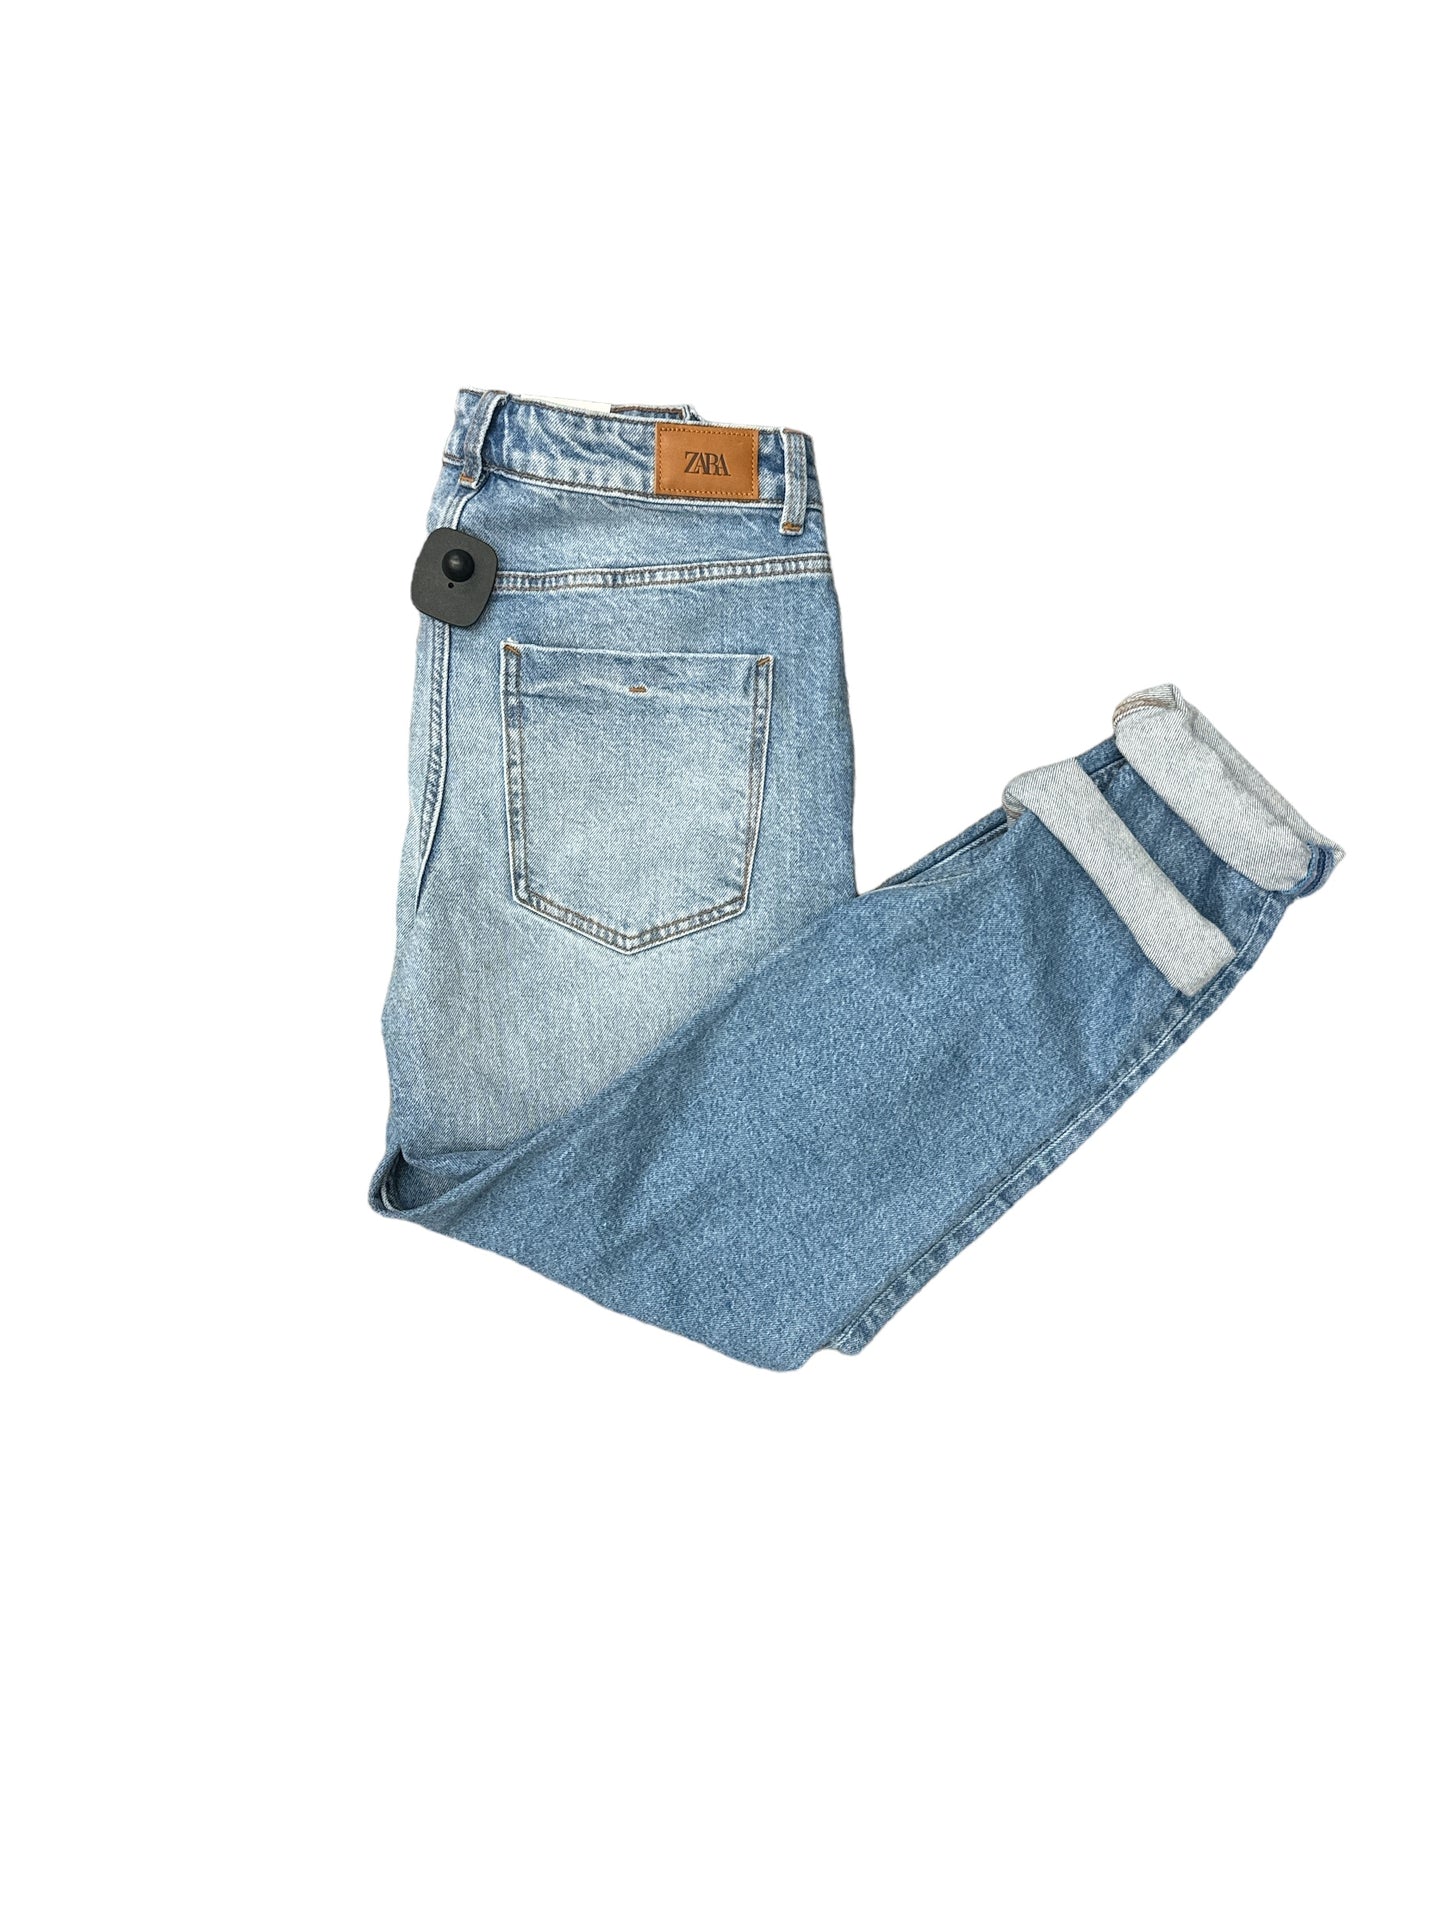 Jeans Cropped By Zara  Size: 4